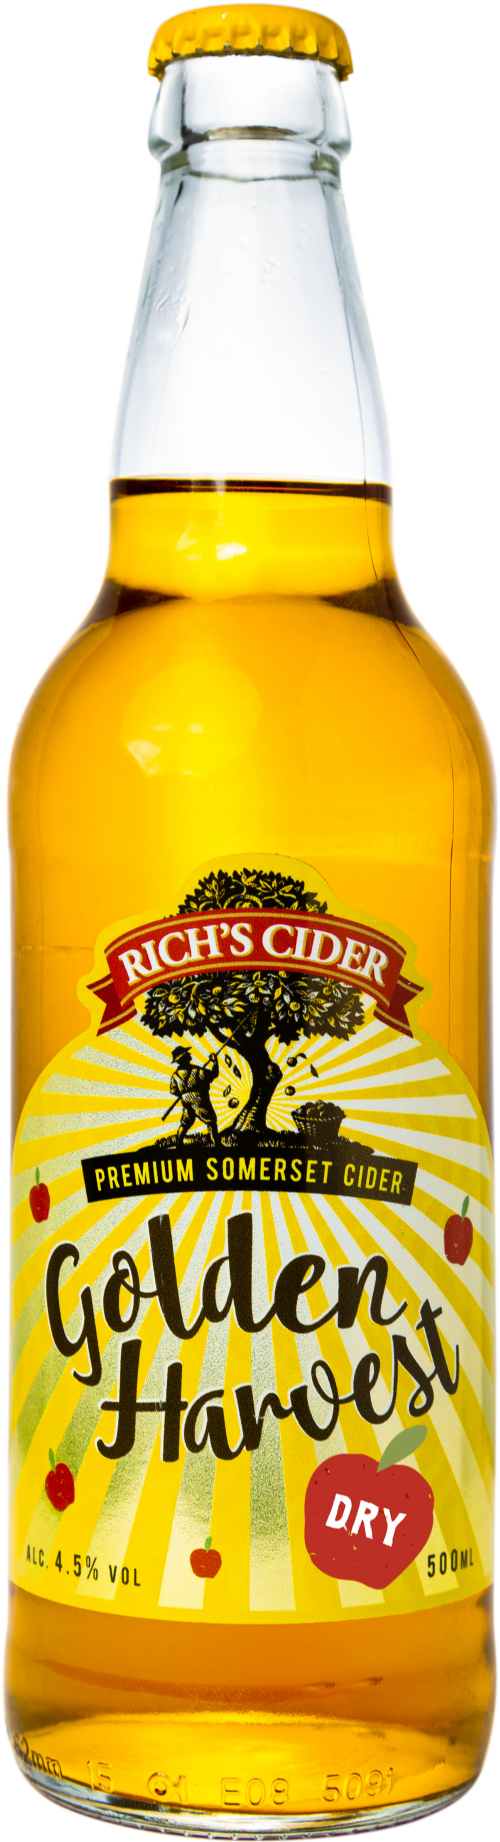 RICH'S CIDER Golden Harvest Cider - Dry 4.5% ABV 500ml